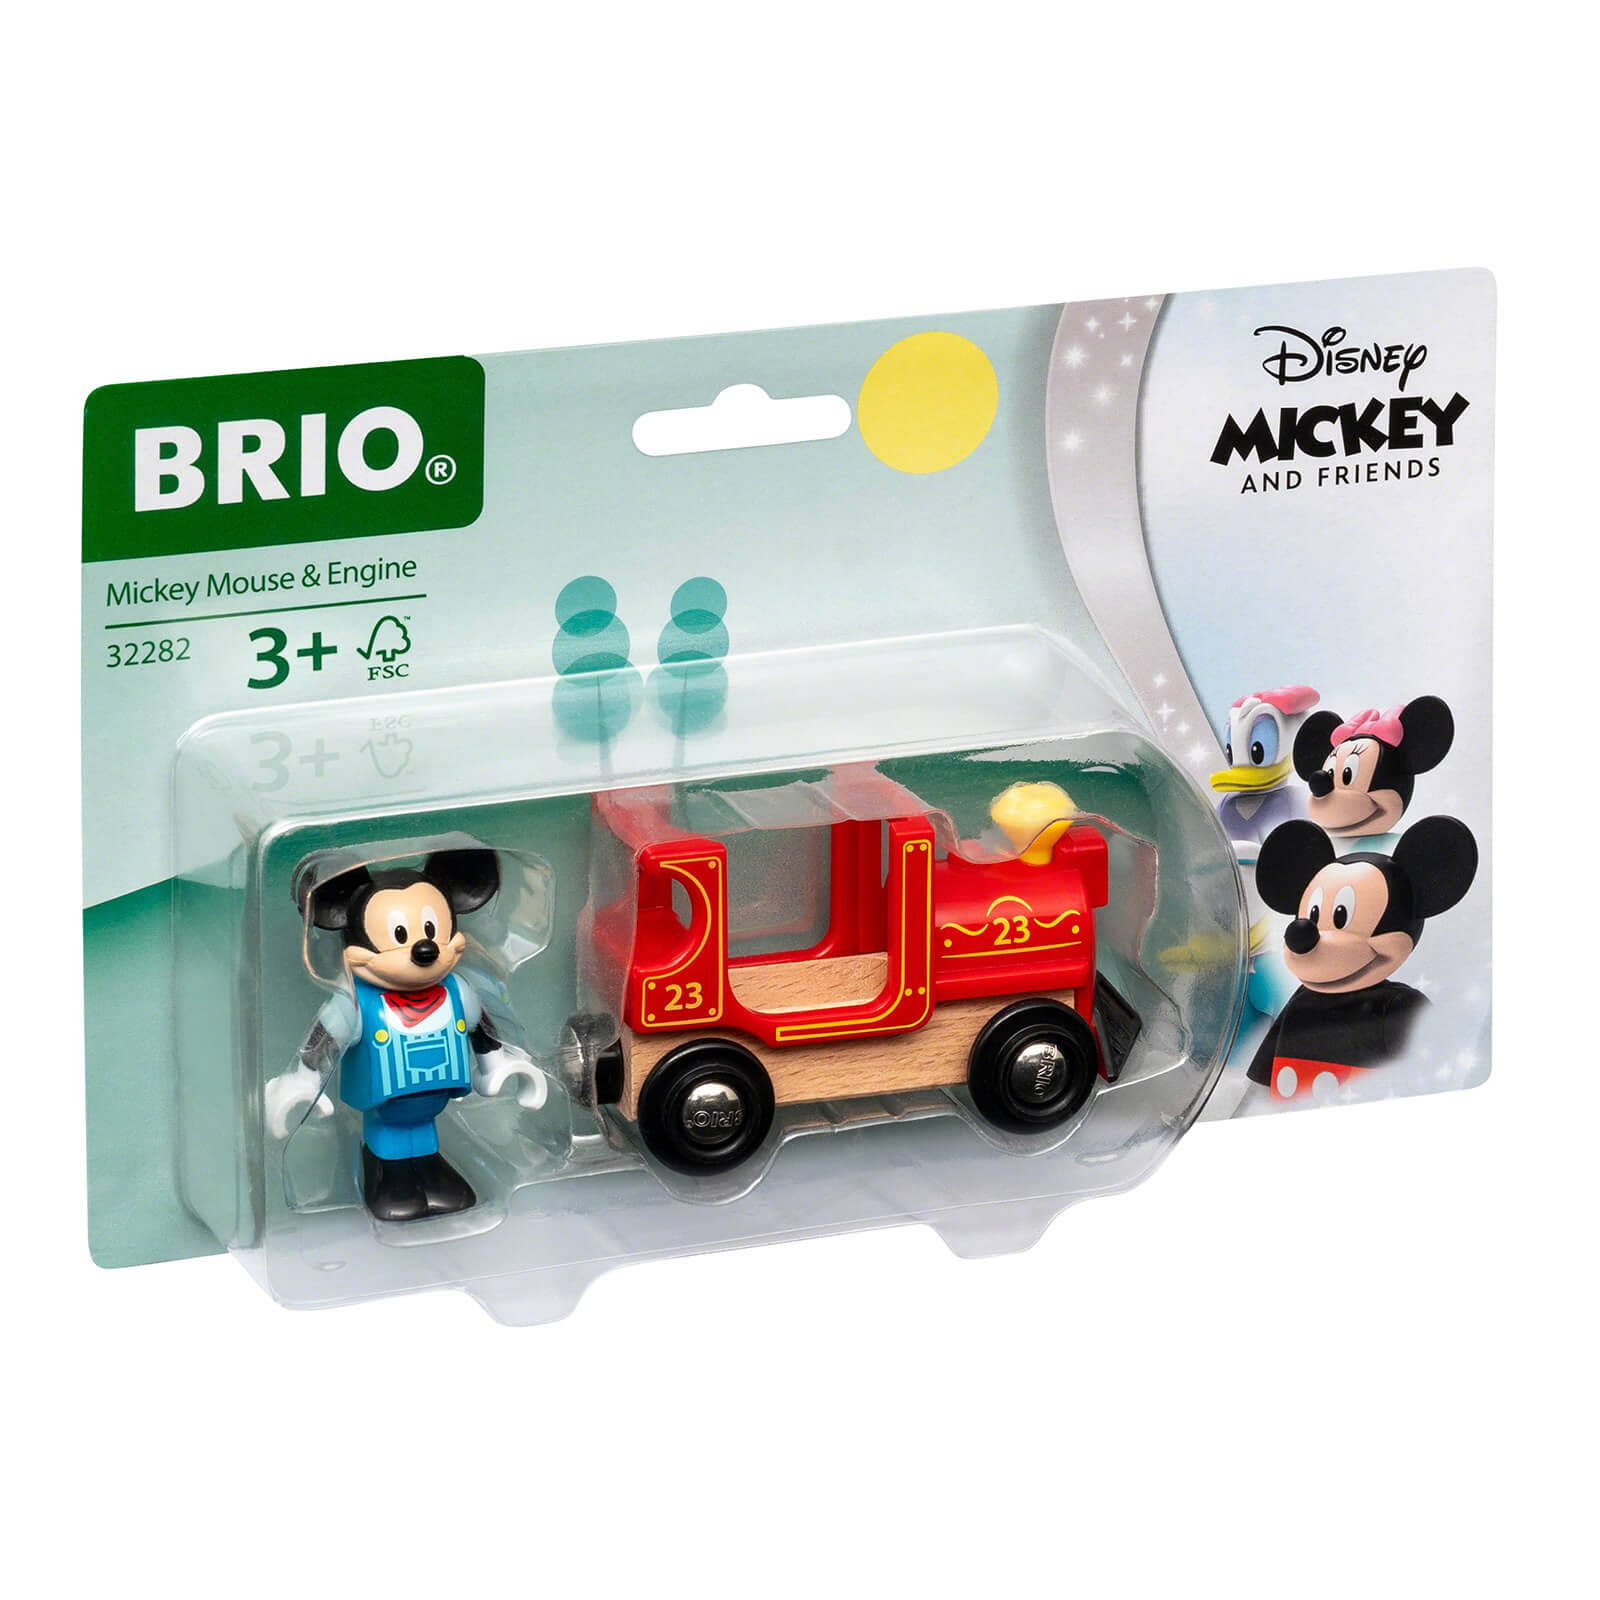 Brio Mickey Mouse & Train Set